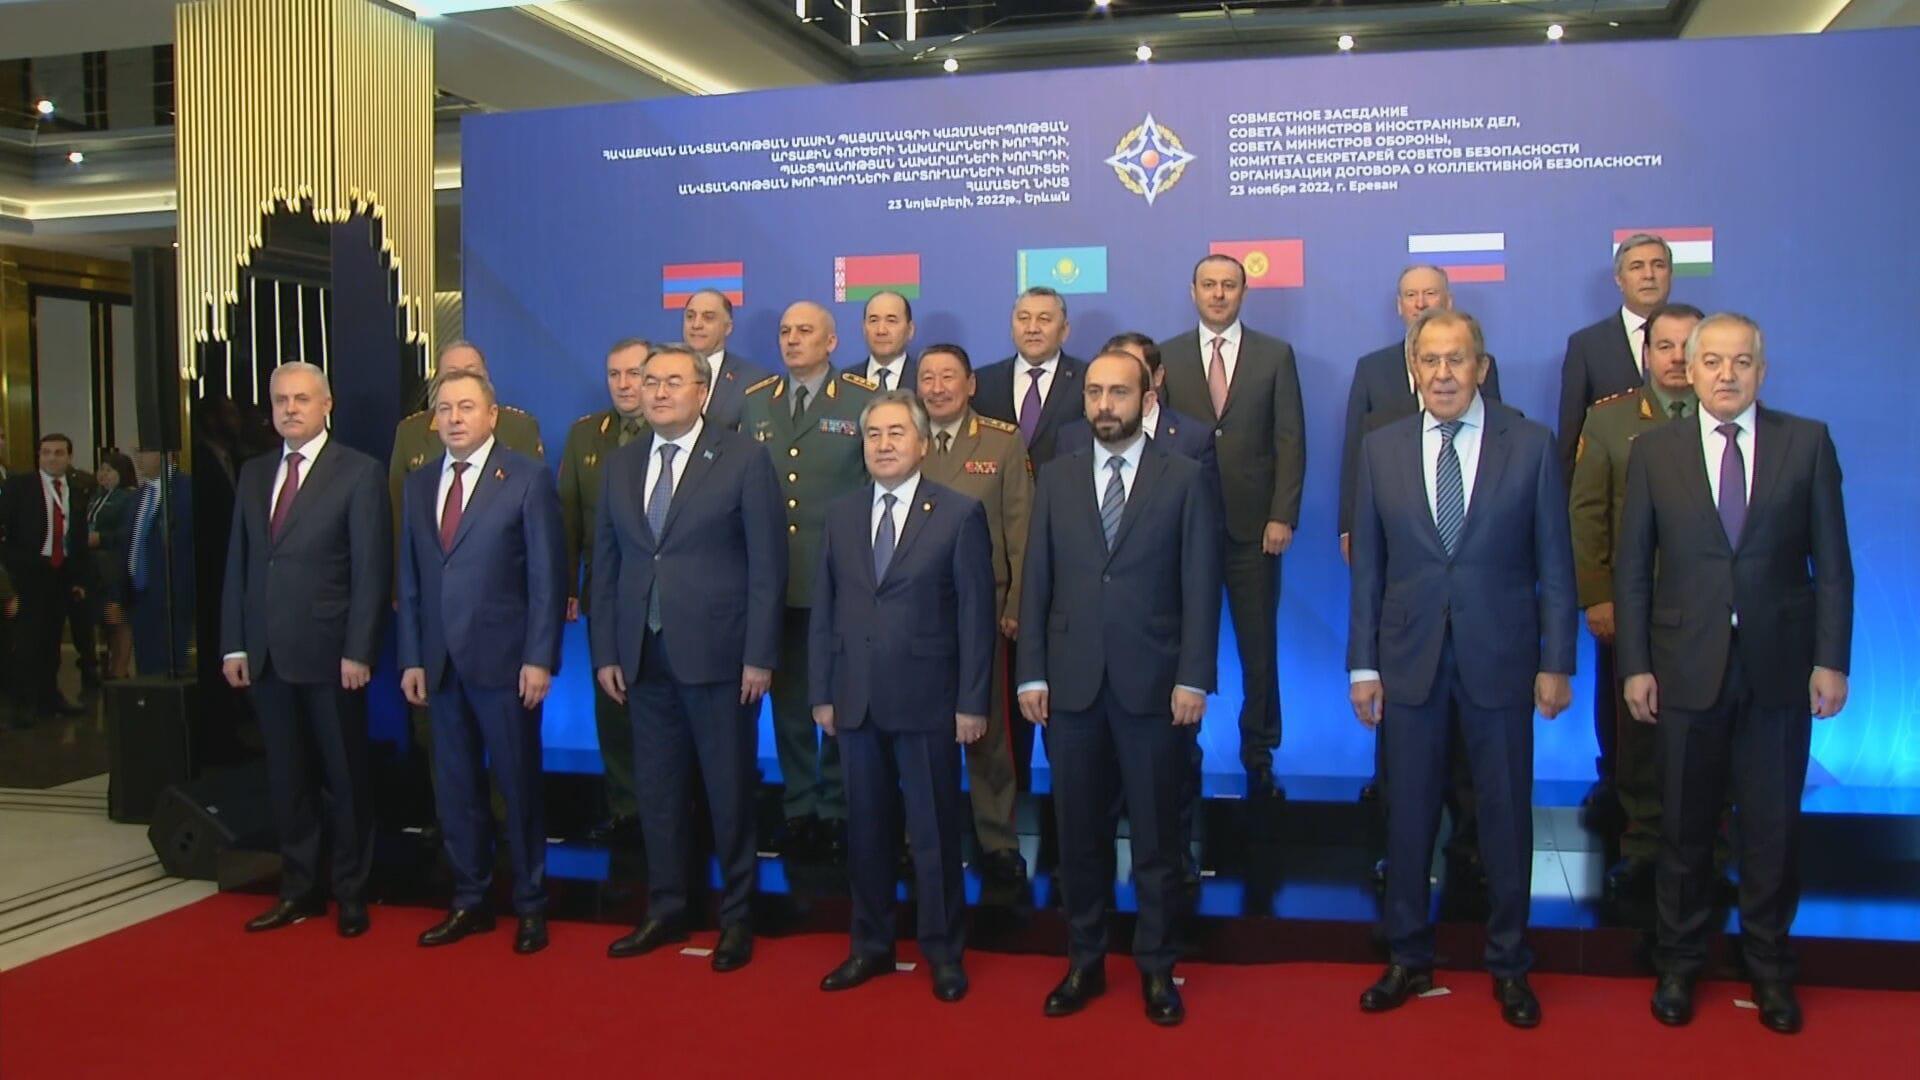 Лавров на саммите. Лавров g20. Саммит ОДКБ В Ереване 2022. Фото с саммита.